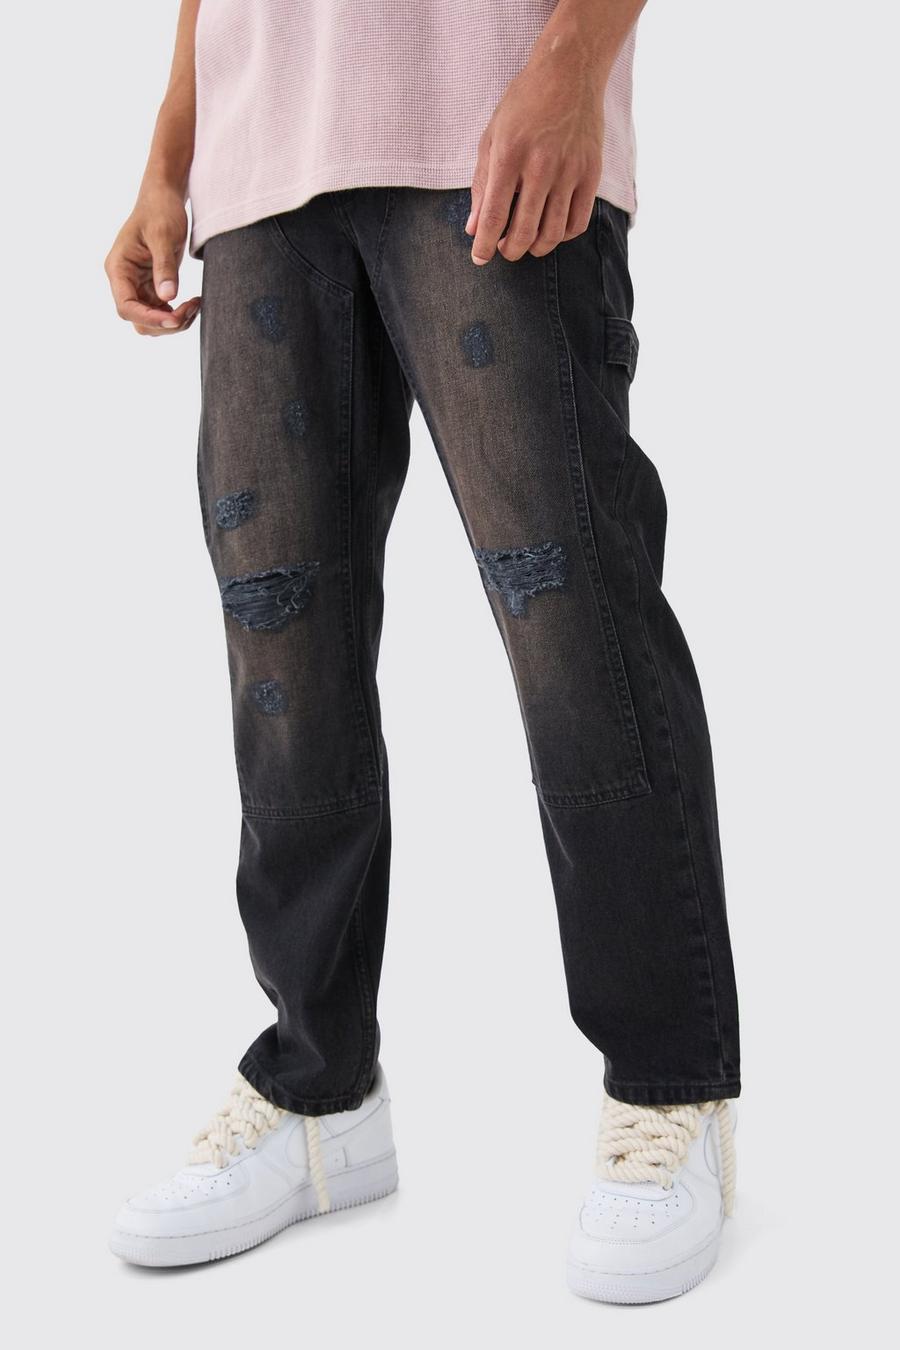 Jeans rilassati in denim rigido stile Carpenter con strappi sul ginocchio in nero slavato, Black